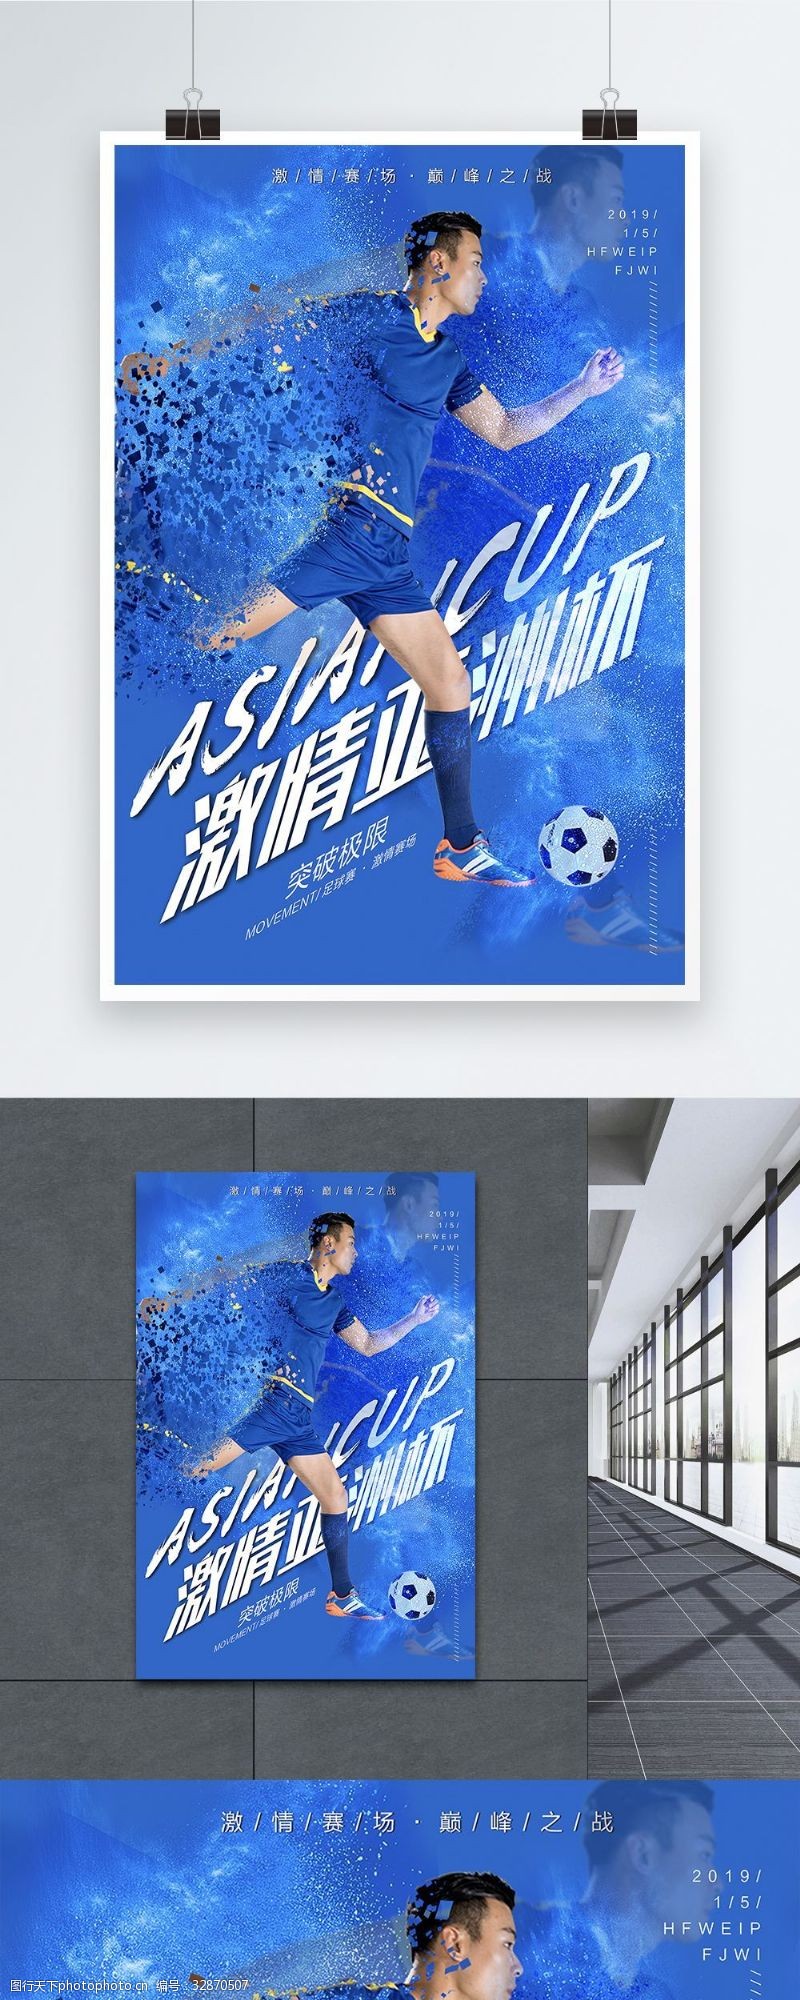 亚洲杯海报2019年亚洲杯足球赛宣传海报